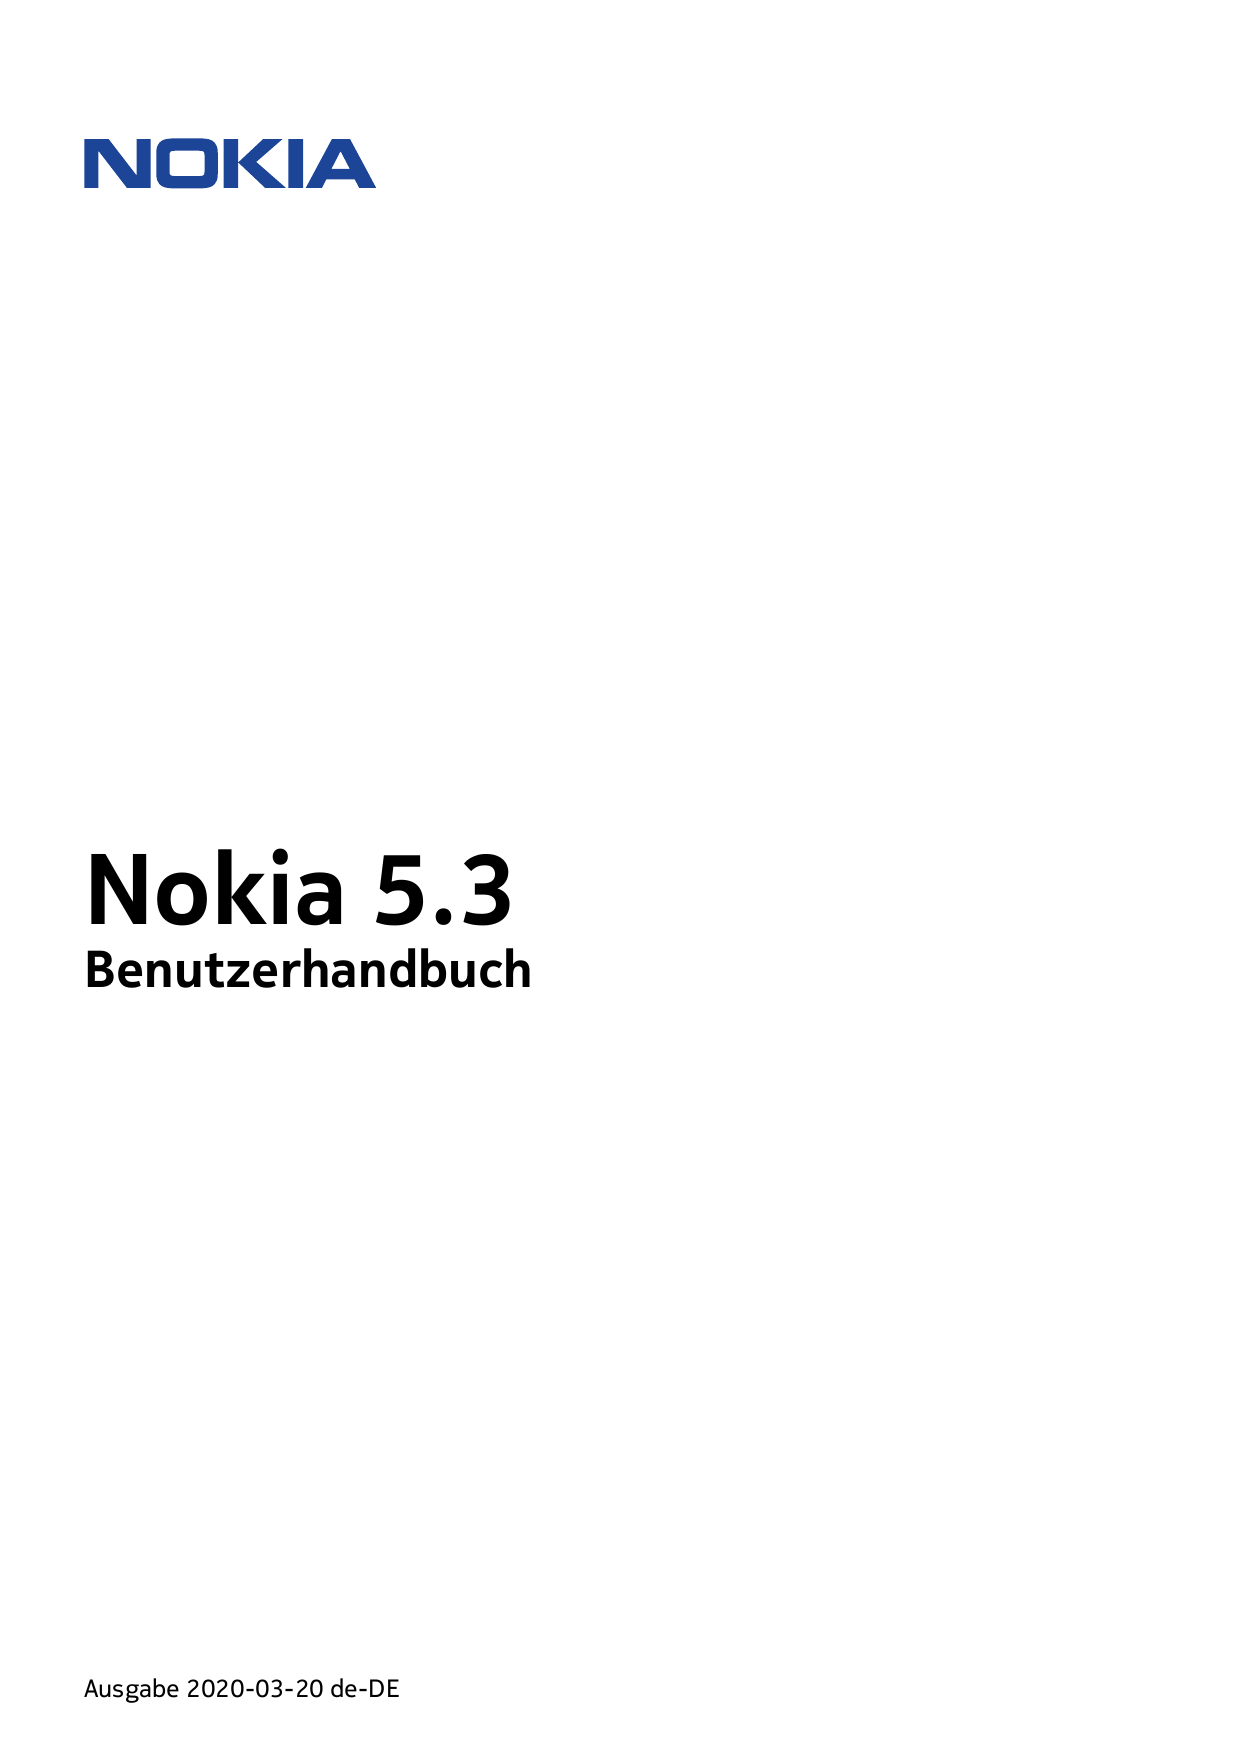 Nokia 5.3BenutzerhandbuchAusgabe 2020-03-20 de-DE